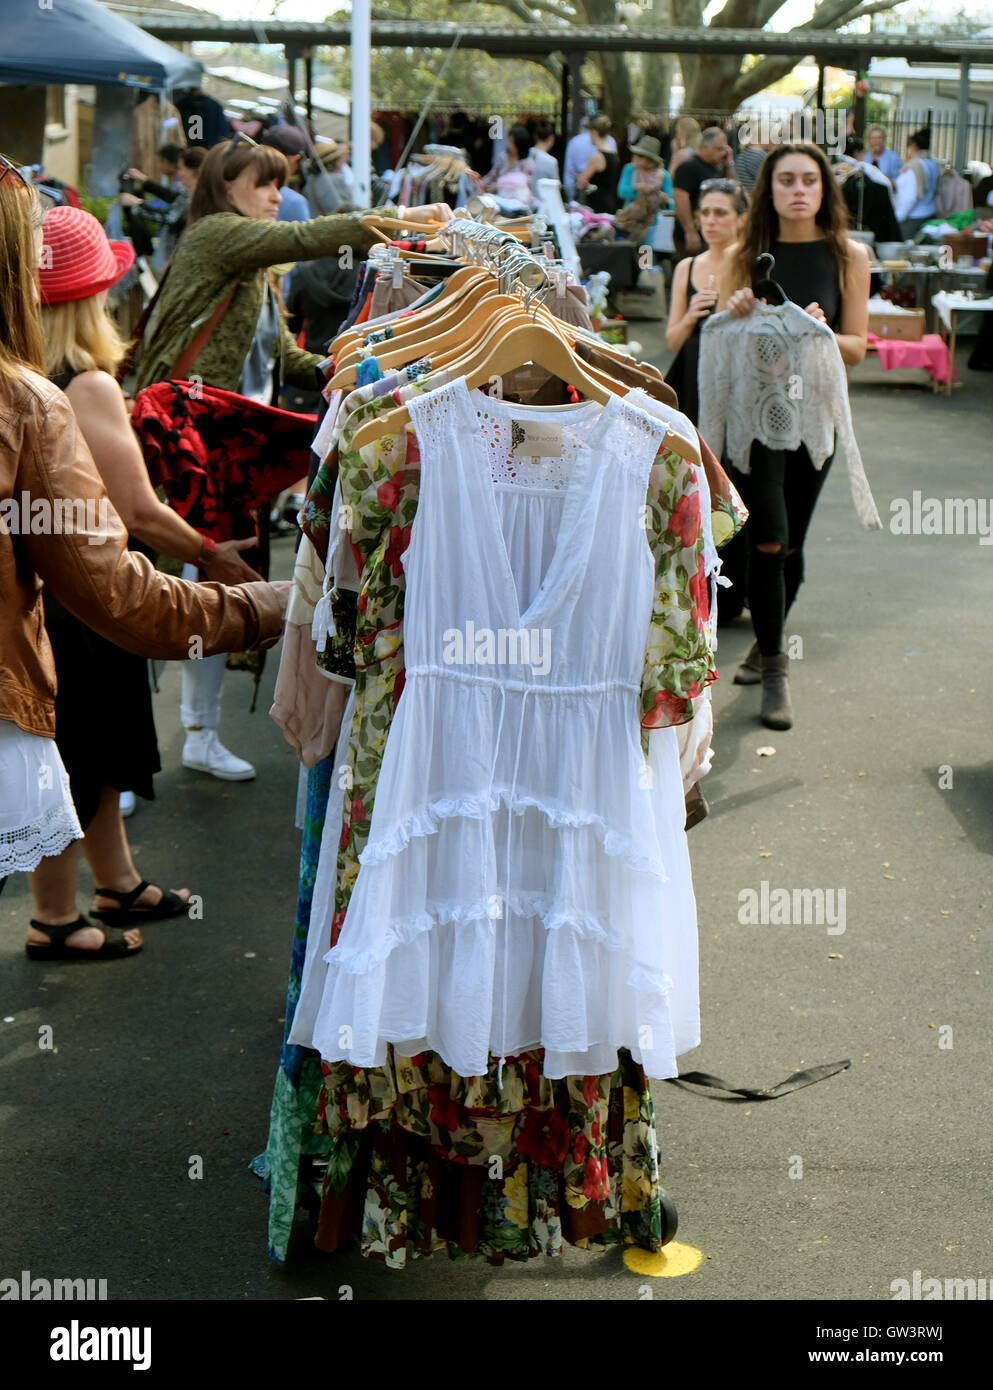 Donne shop per il negozio di vestiti in un mercato all'aperto Foto Stock